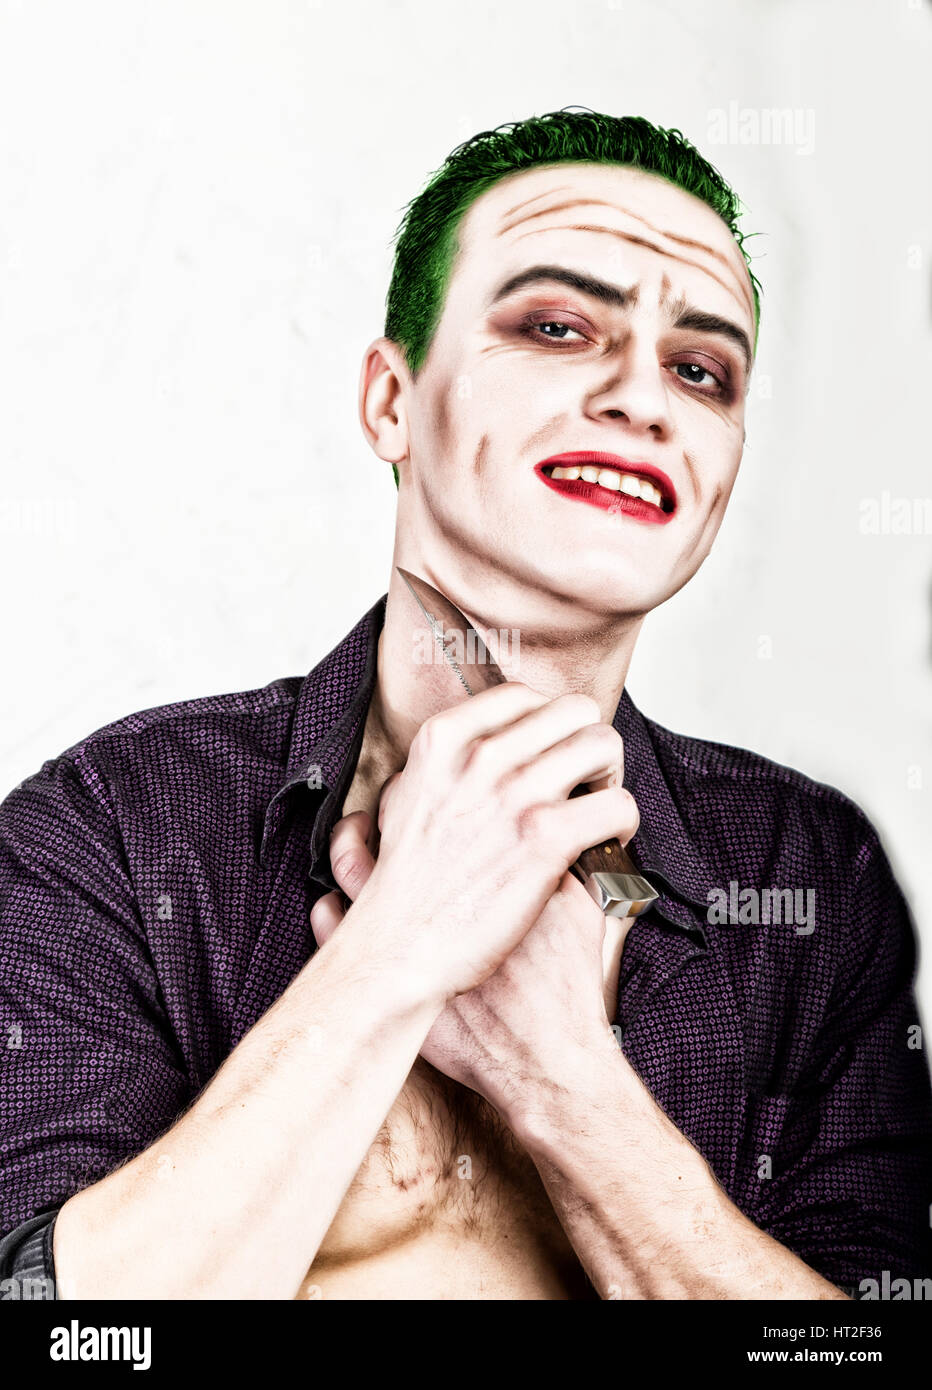 Kerl mit verrückten Joker Gesicht halten, Messer, grüne Haare und idiotische Smike. Karneval Kostüm. Stockfoto